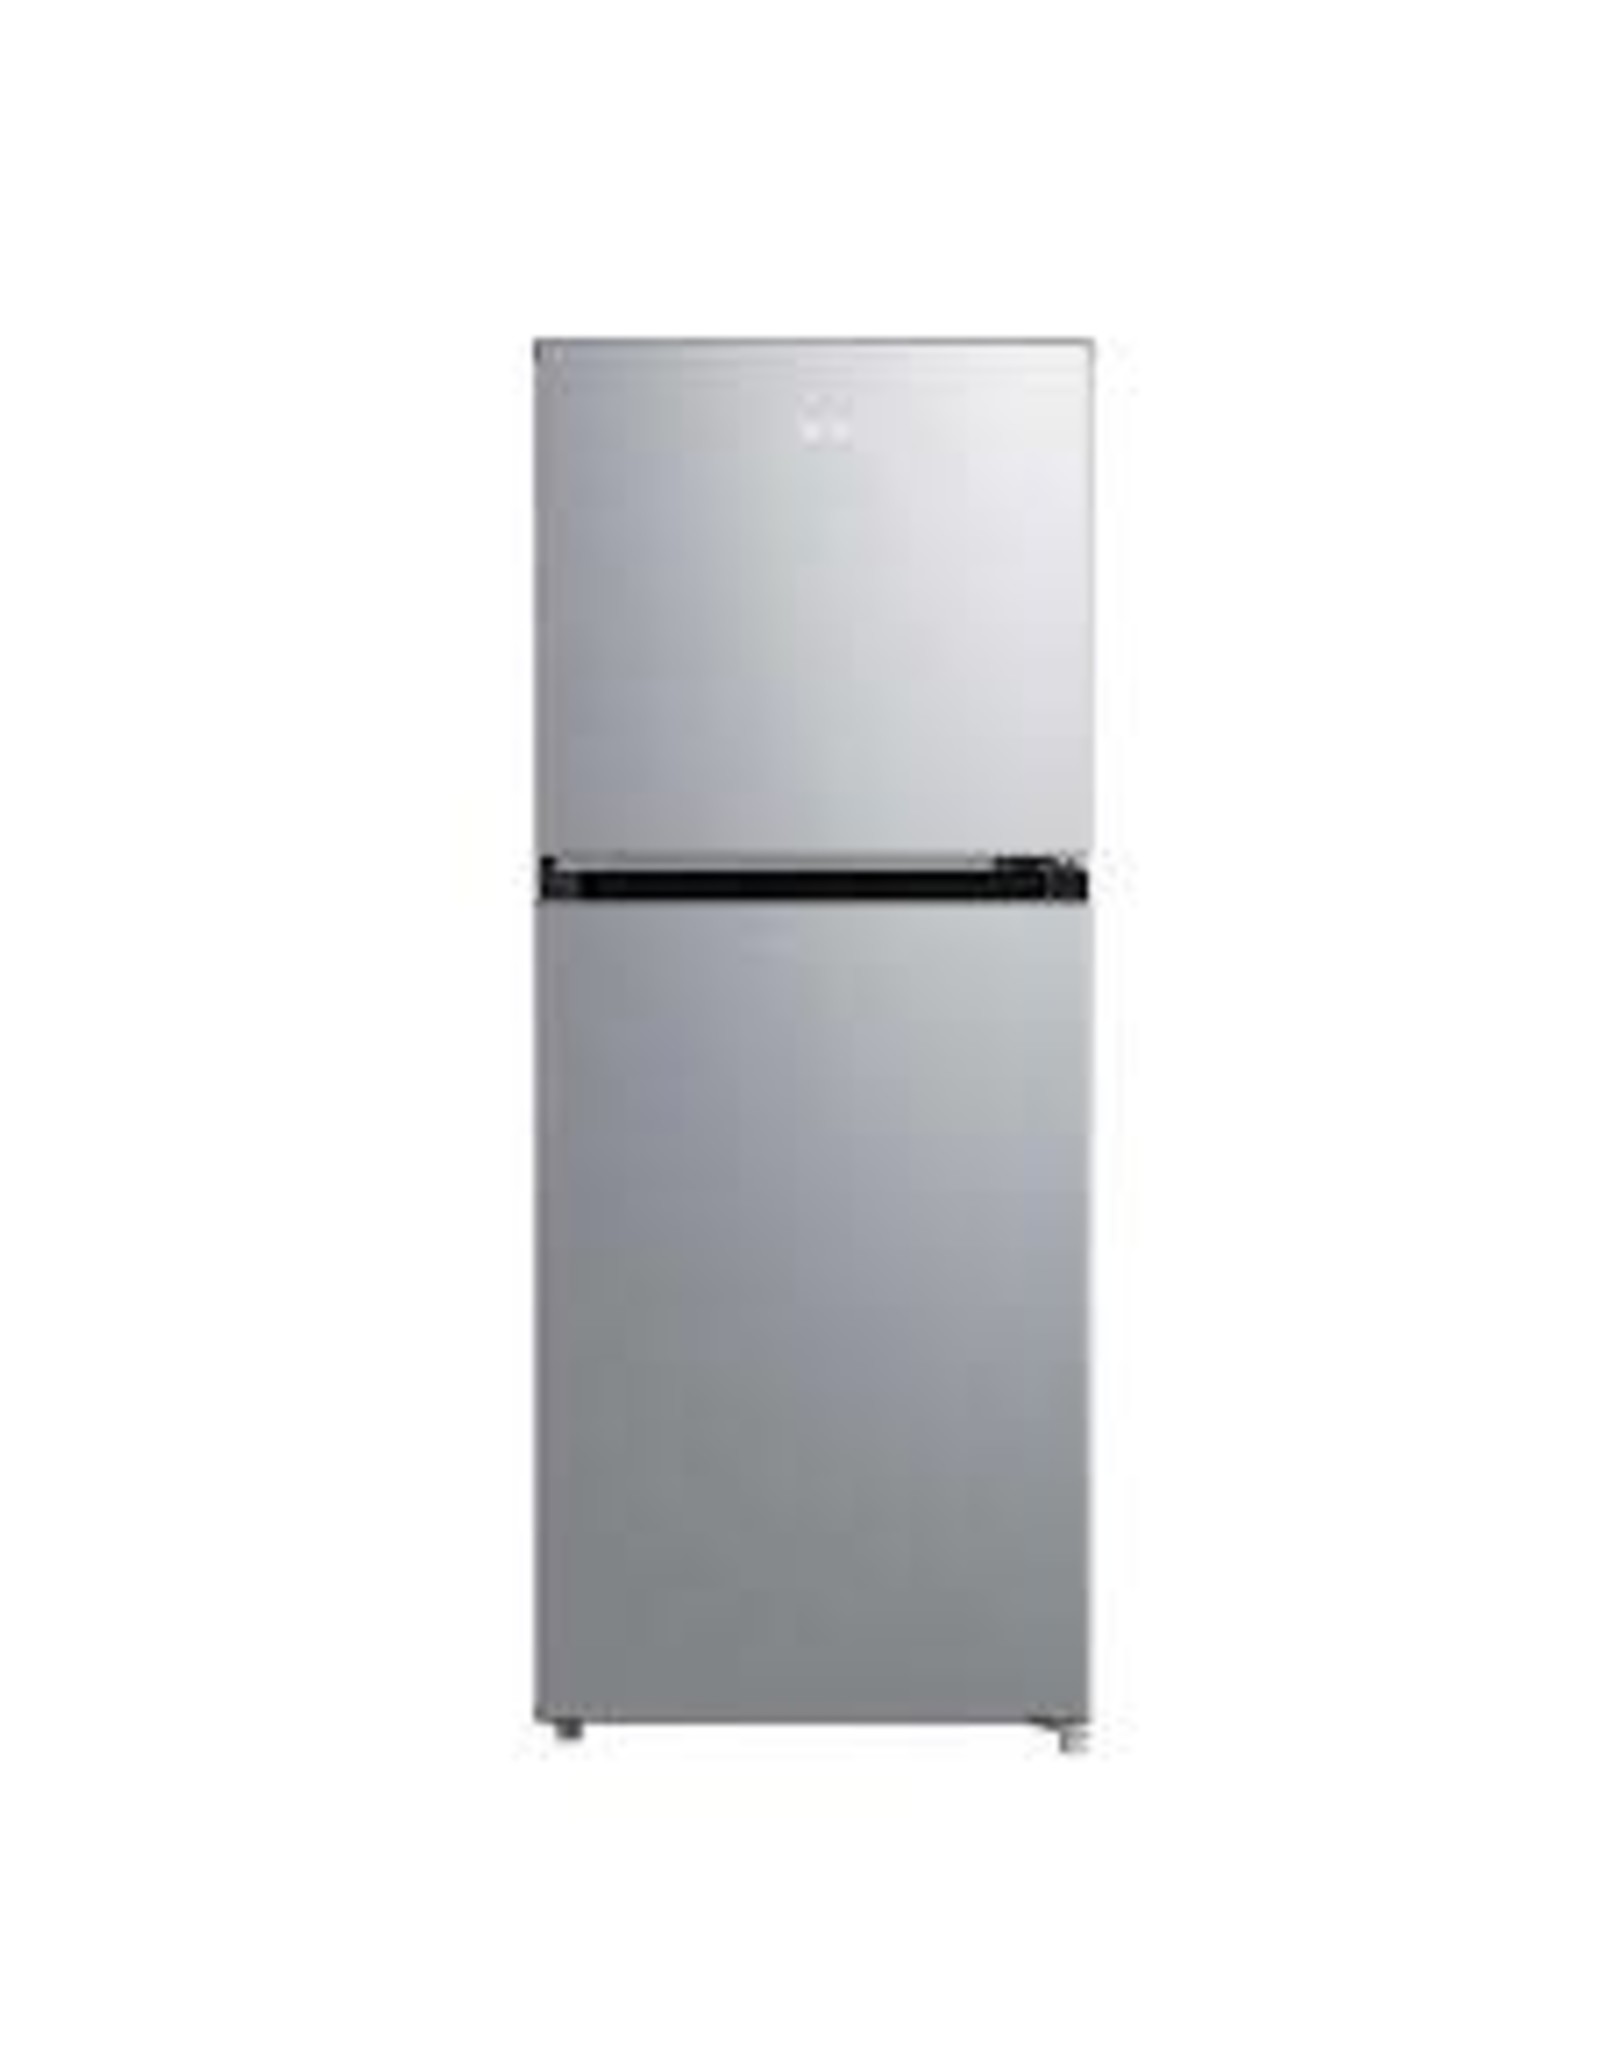 Midea MRM45D3ASL Midea Compact Refrigerator, 2-Door, 4.5 cu ft, Black and Silver